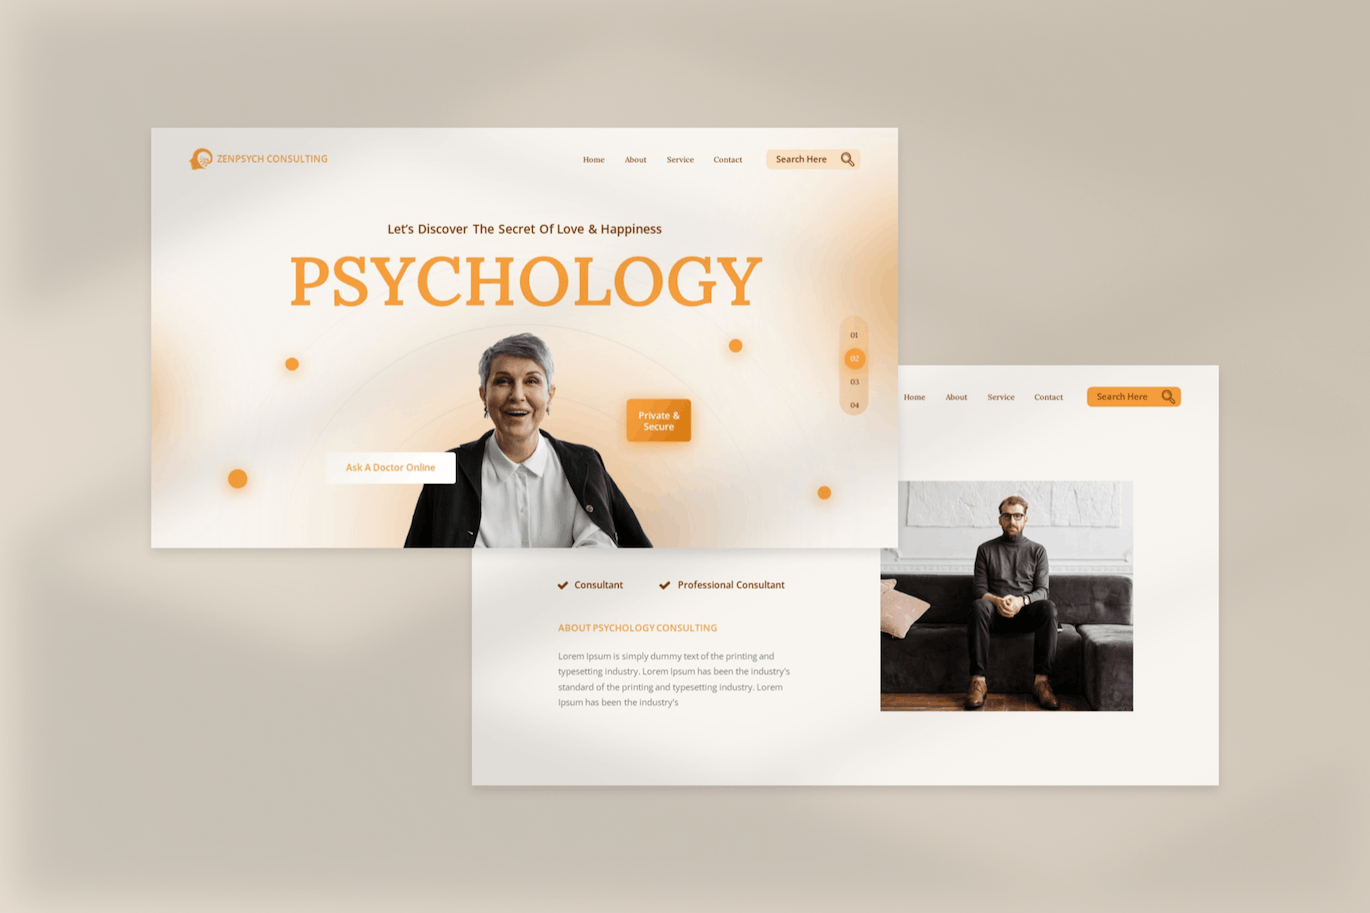 心理学咨询谷歌幻灯片素材 Zenpsych – Psychology Consulting Google Slide 幻灯图表 第7张